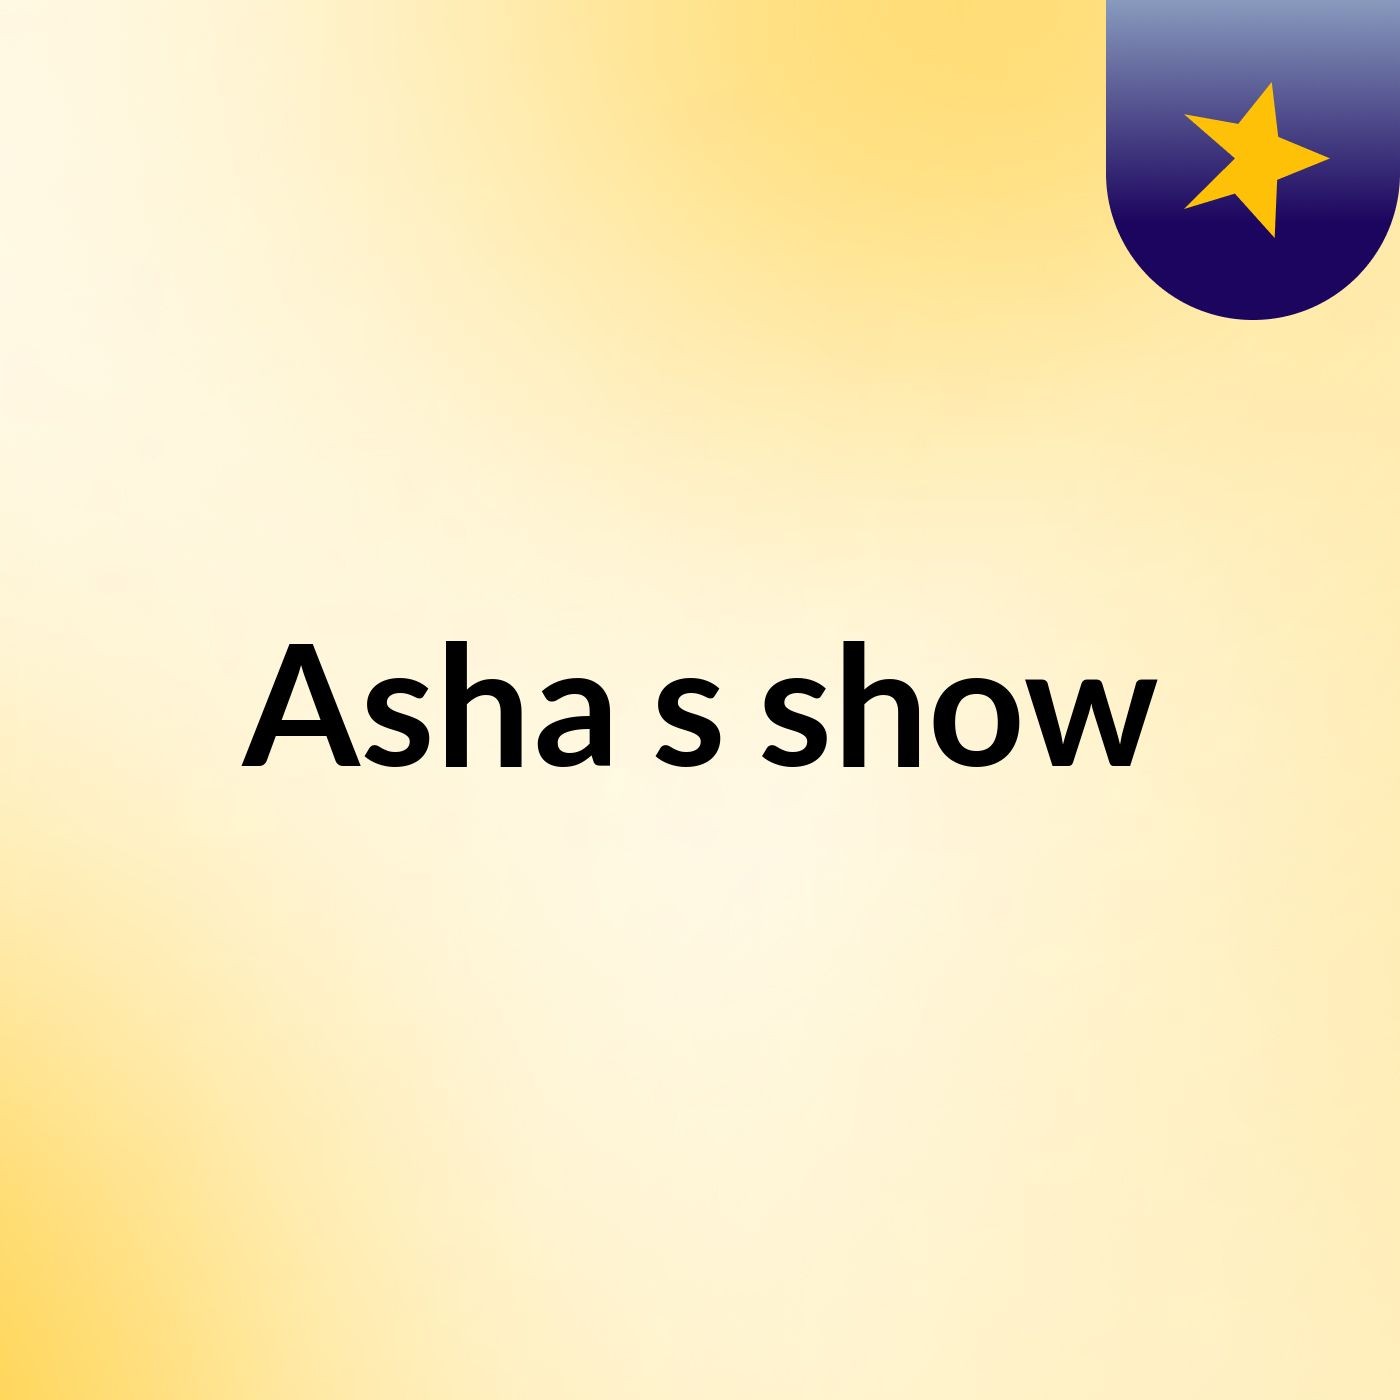 Asha's show